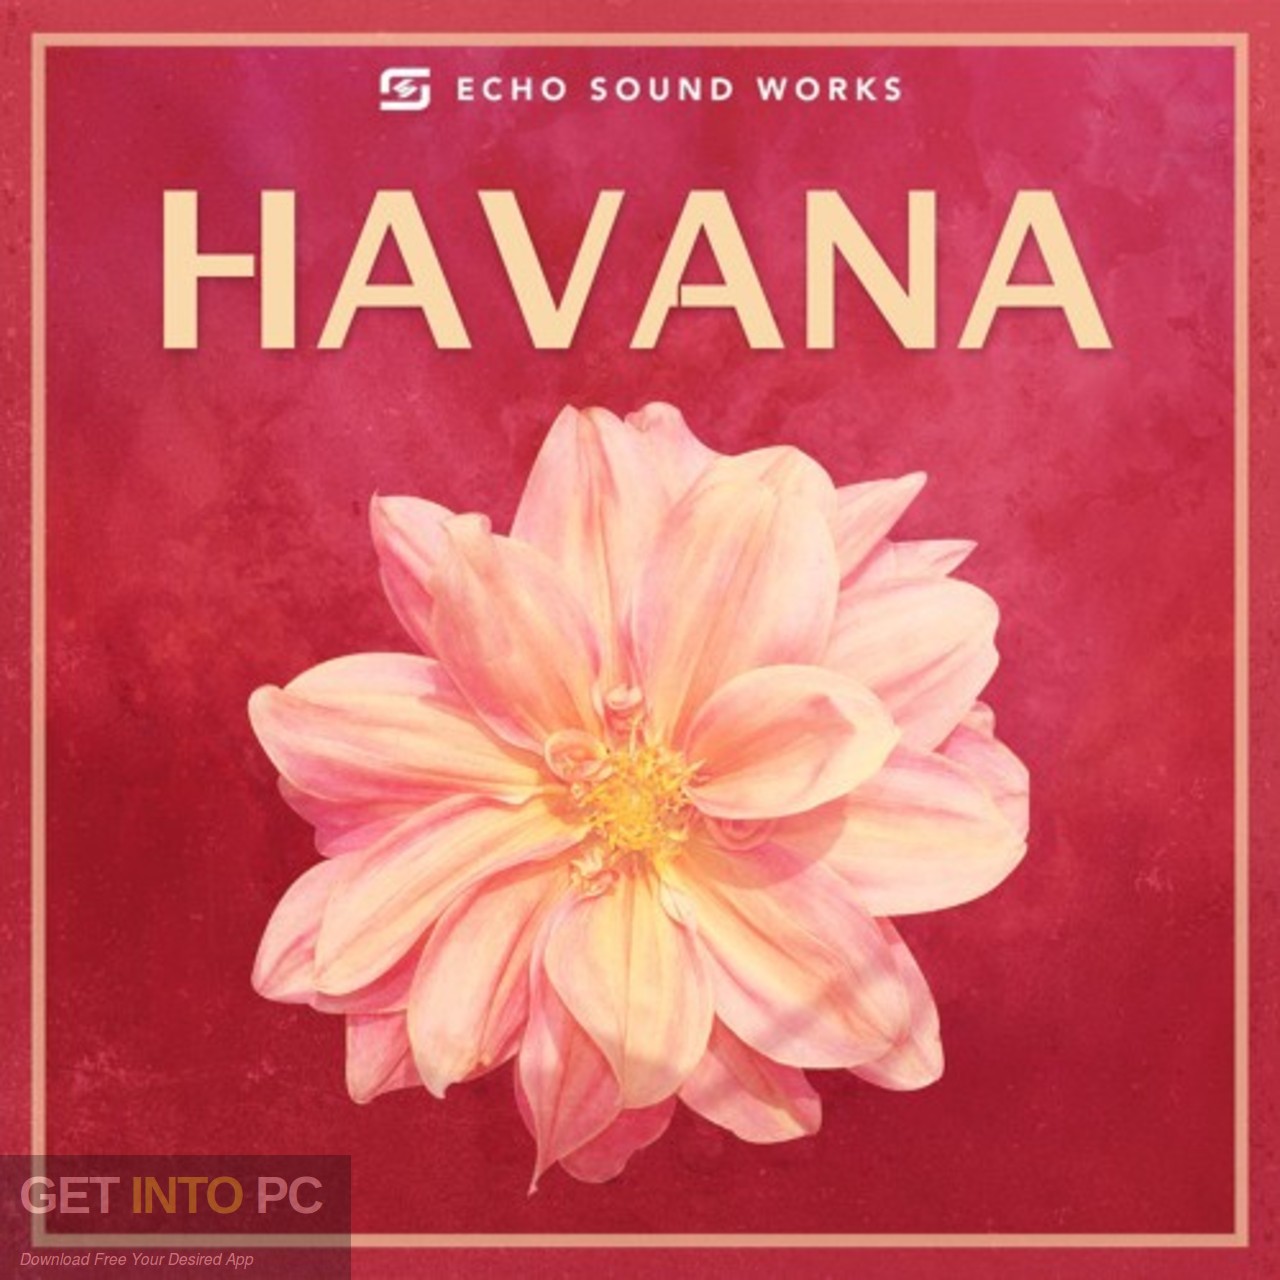 Echo Sound Works - Havana Free Download